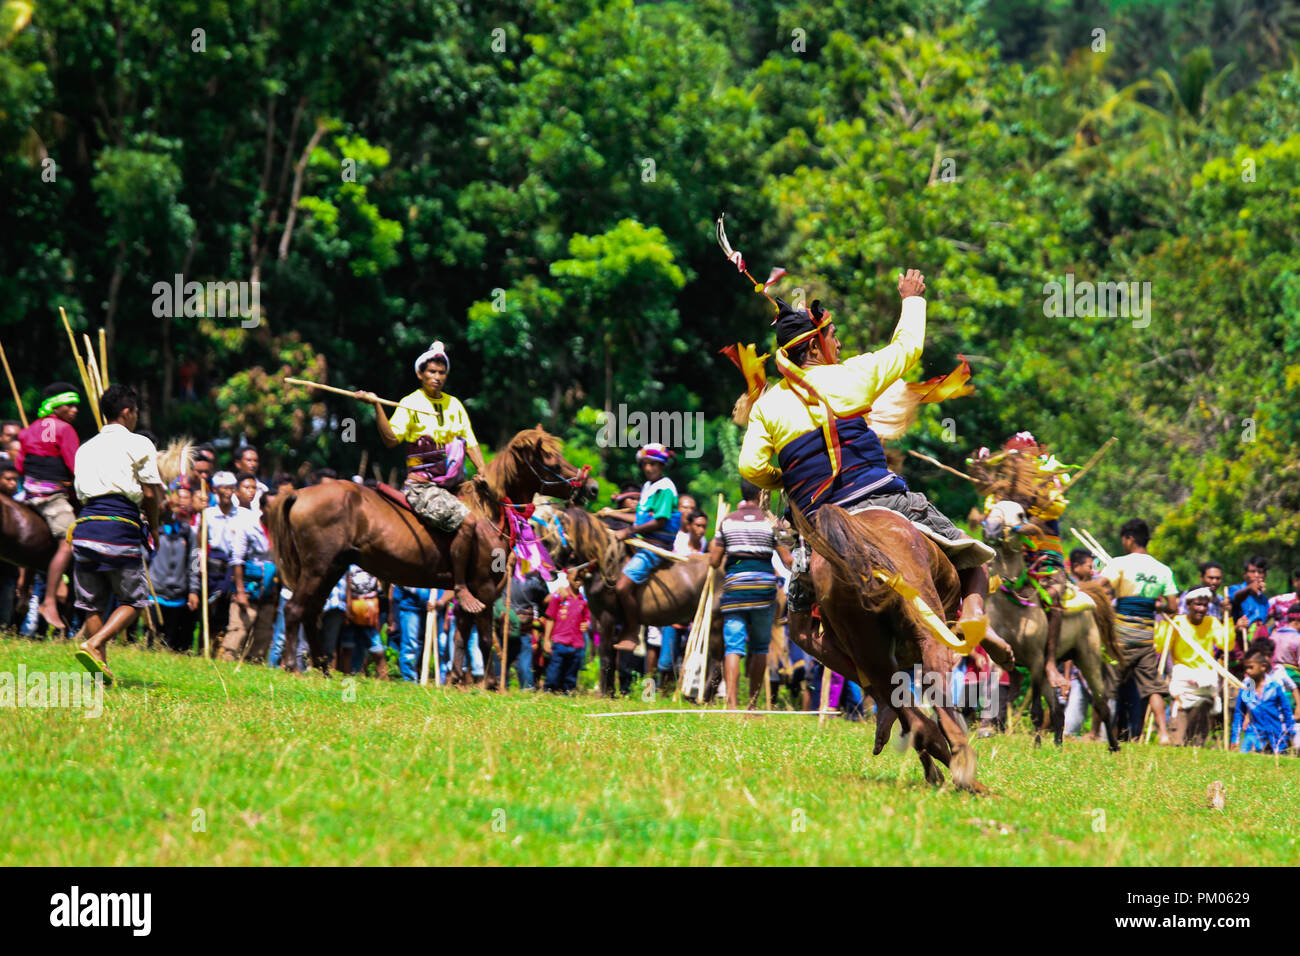 Pasola ceremonias tradicionales de Indonesia, en la que participan jóvenes caballeros a caballo Foto de stock